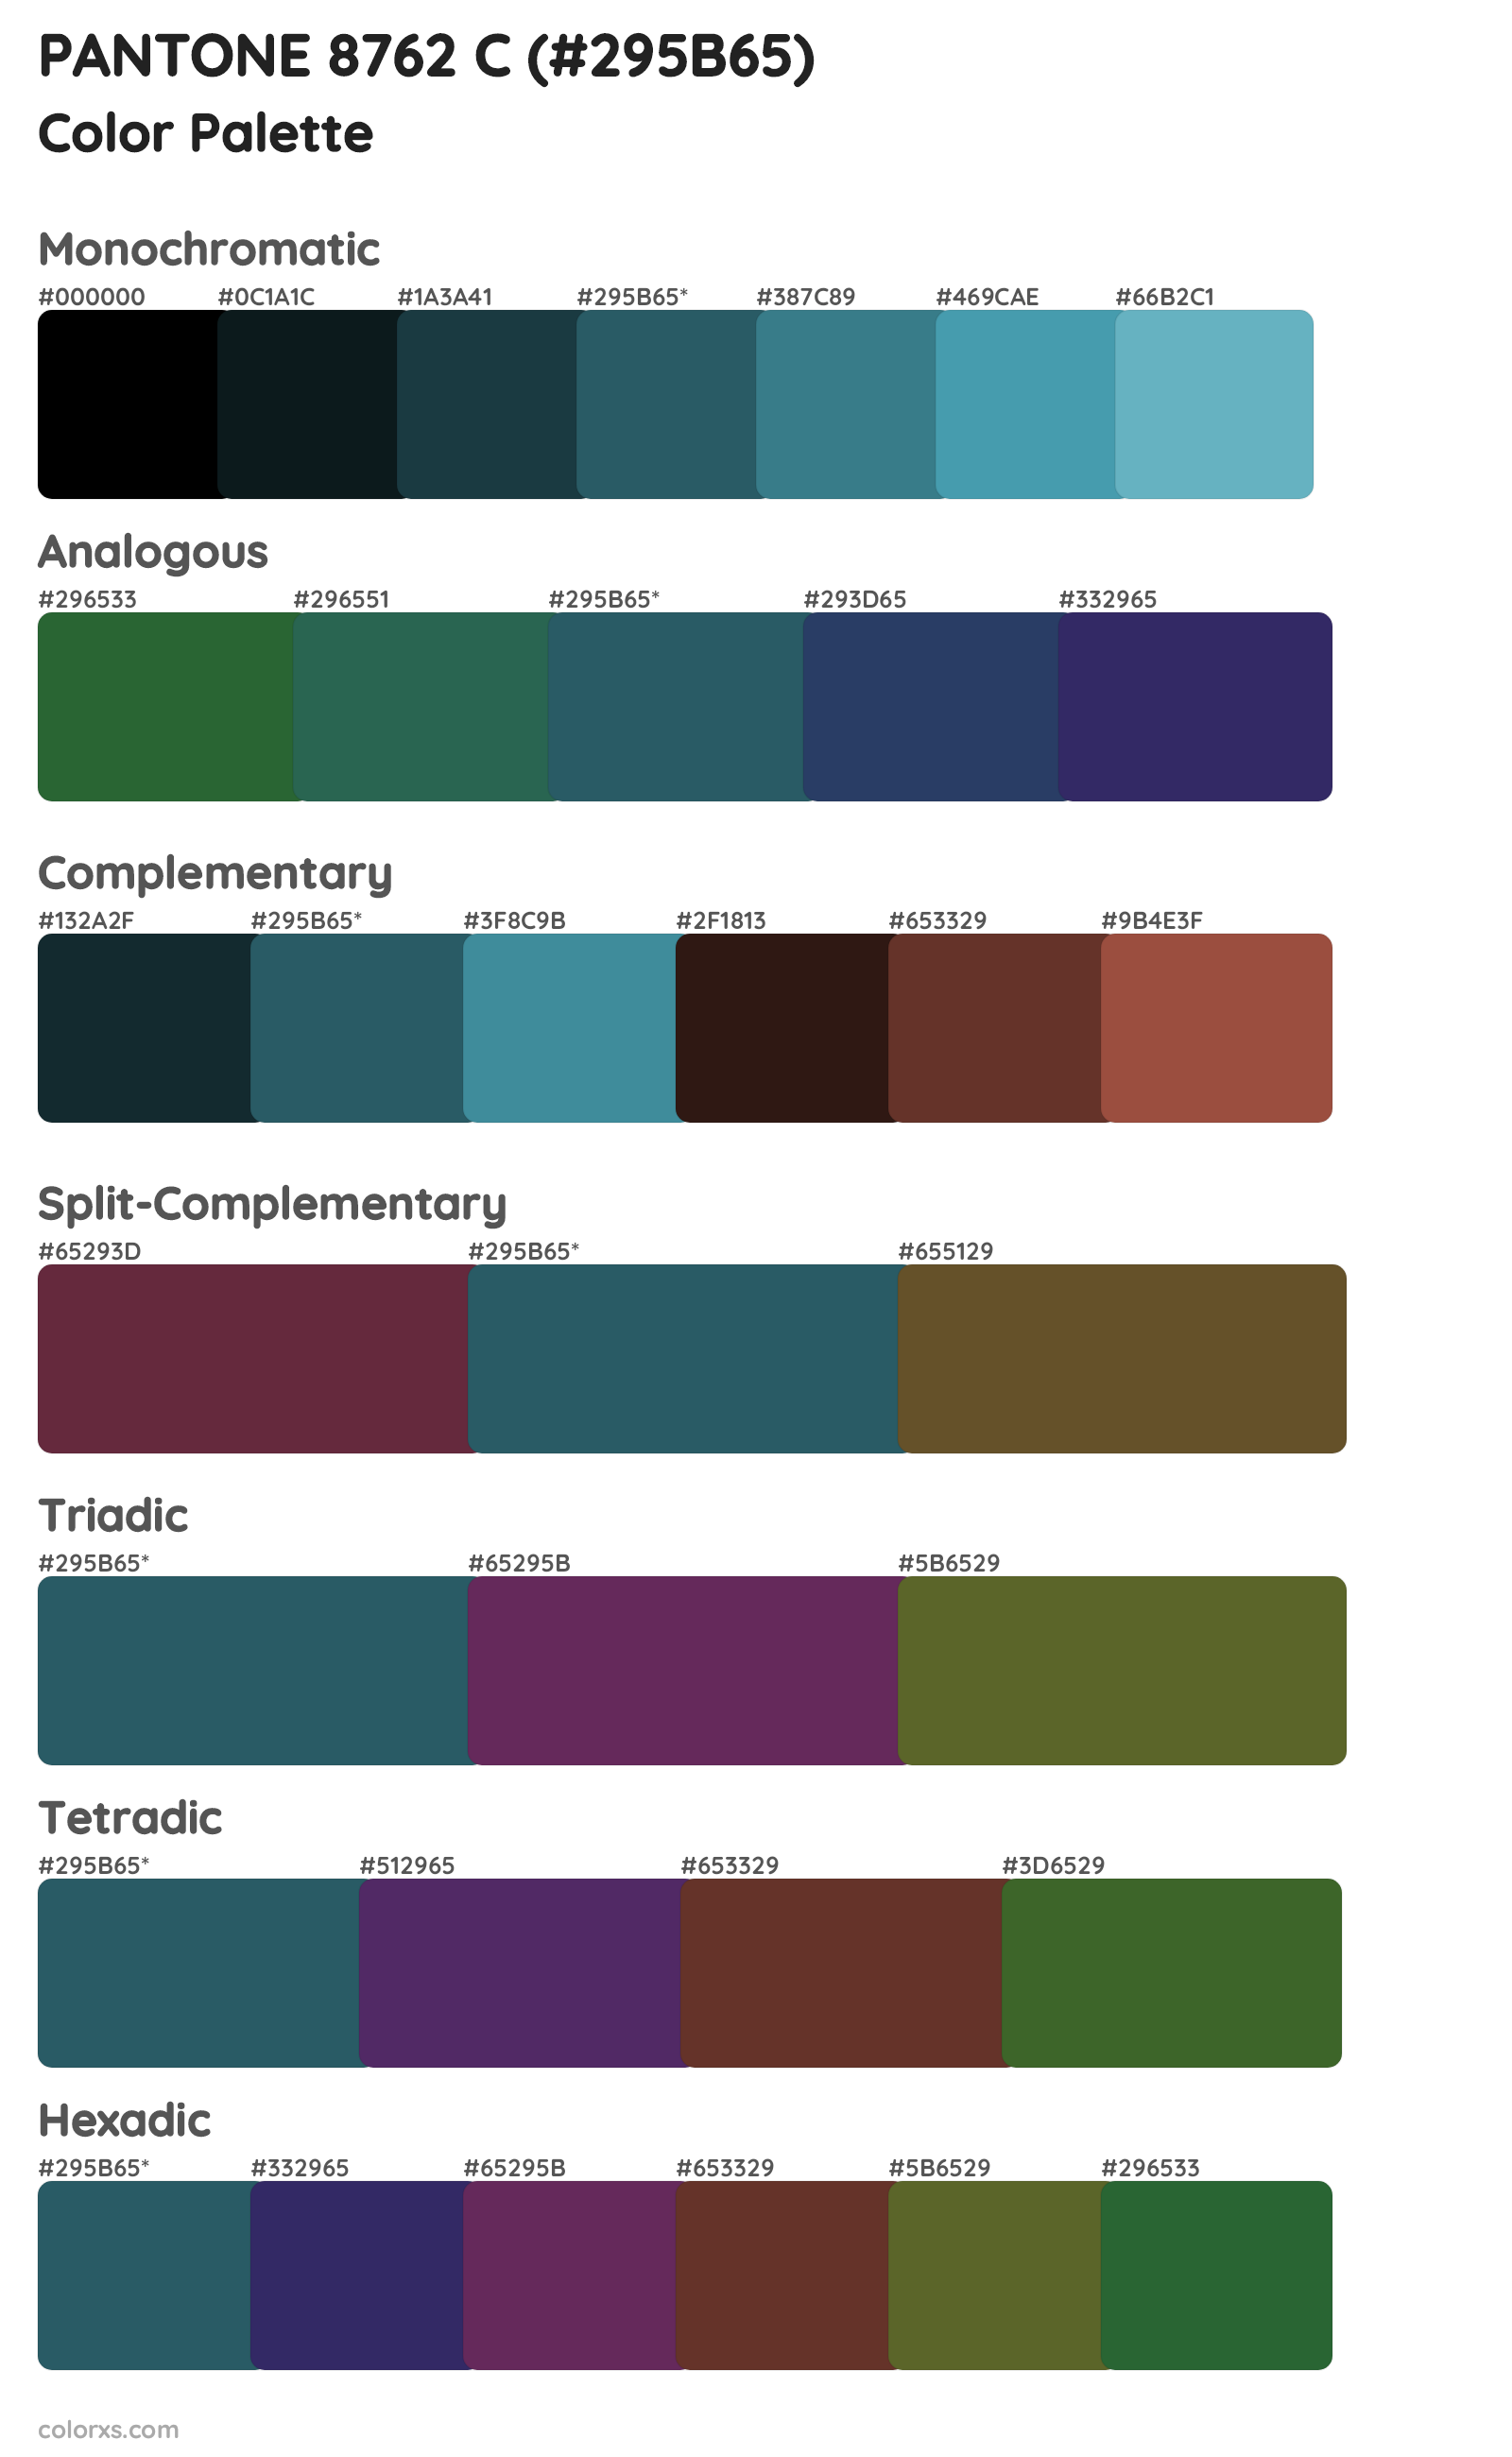 PANTONE 8762 C Color Scheme Palettes